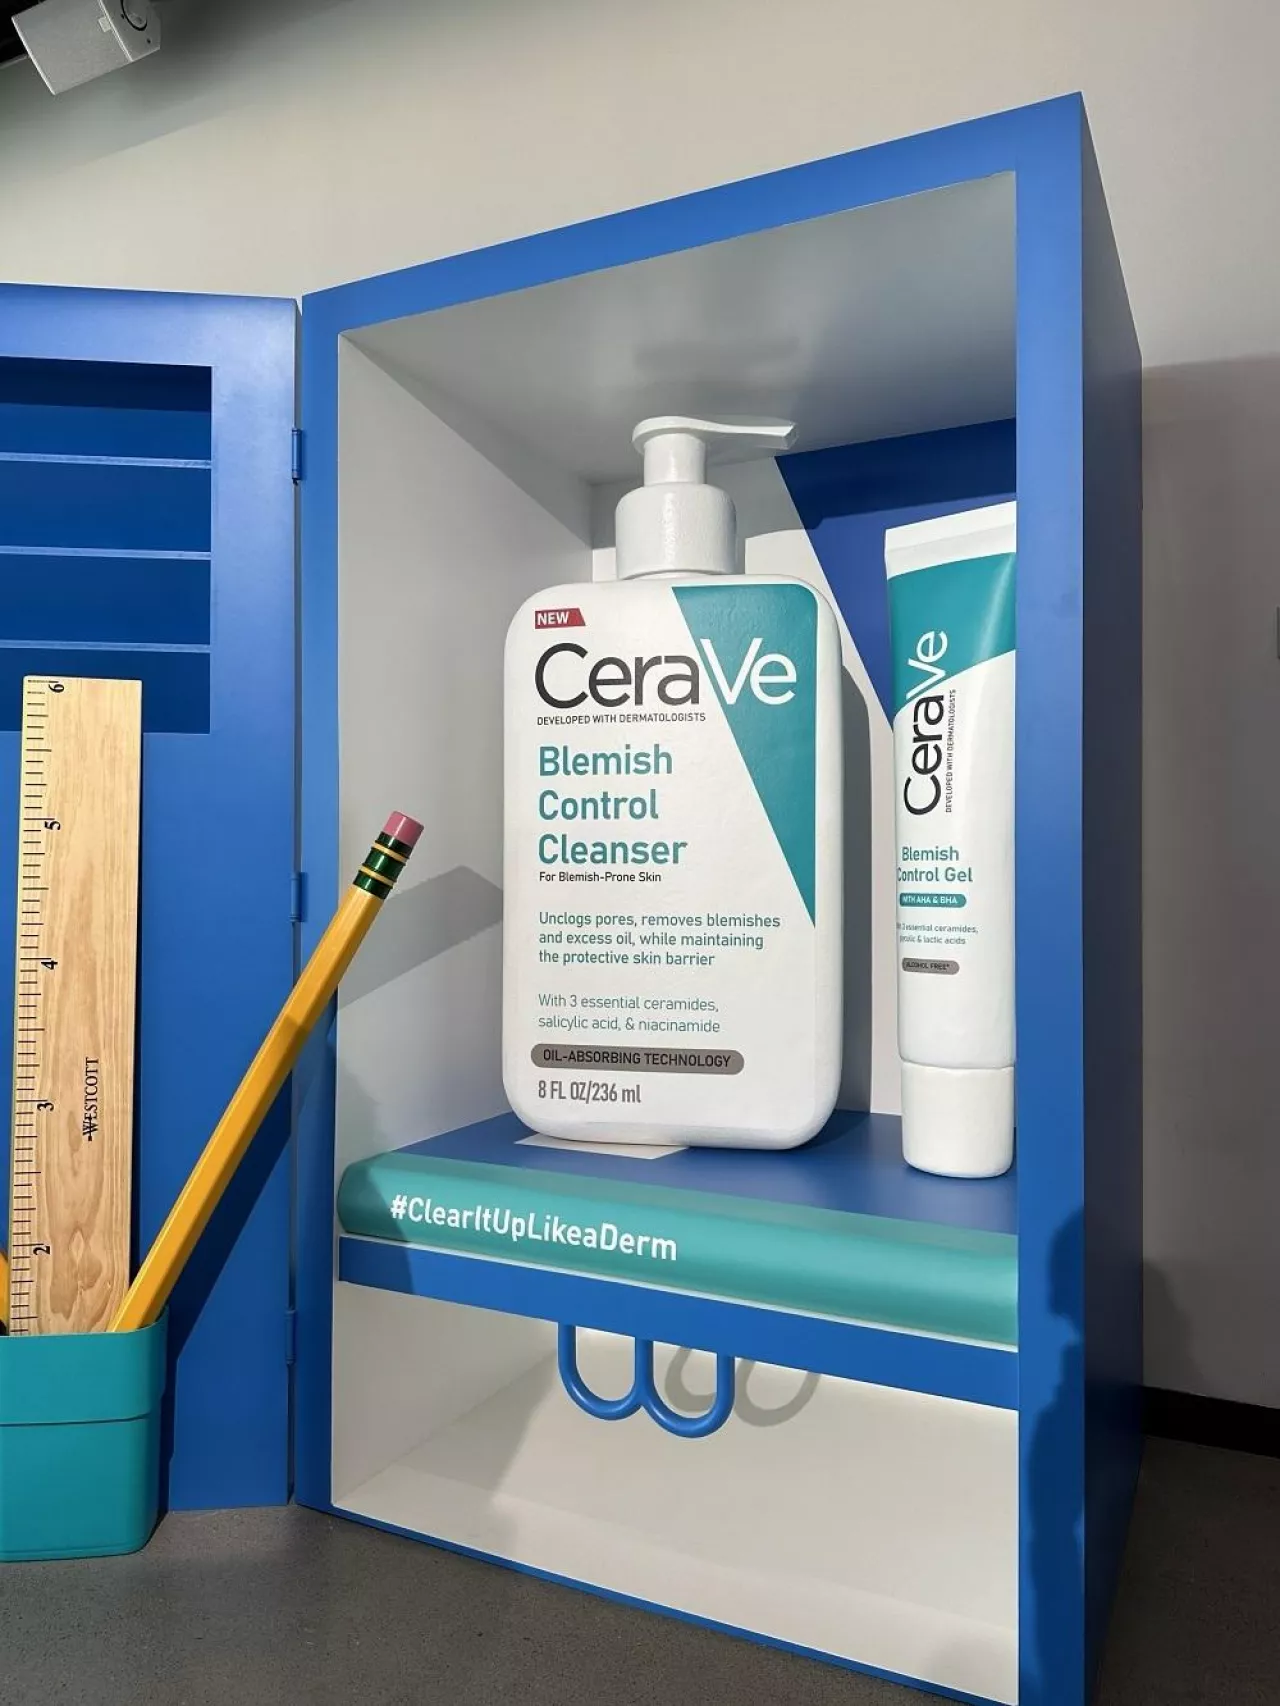 &lt;p&gt;W Cerave Acne Academy wzieli udział dermatolodzy, skin eksperci i ambasadorzy marki z całego świata&lt;/p&gt;